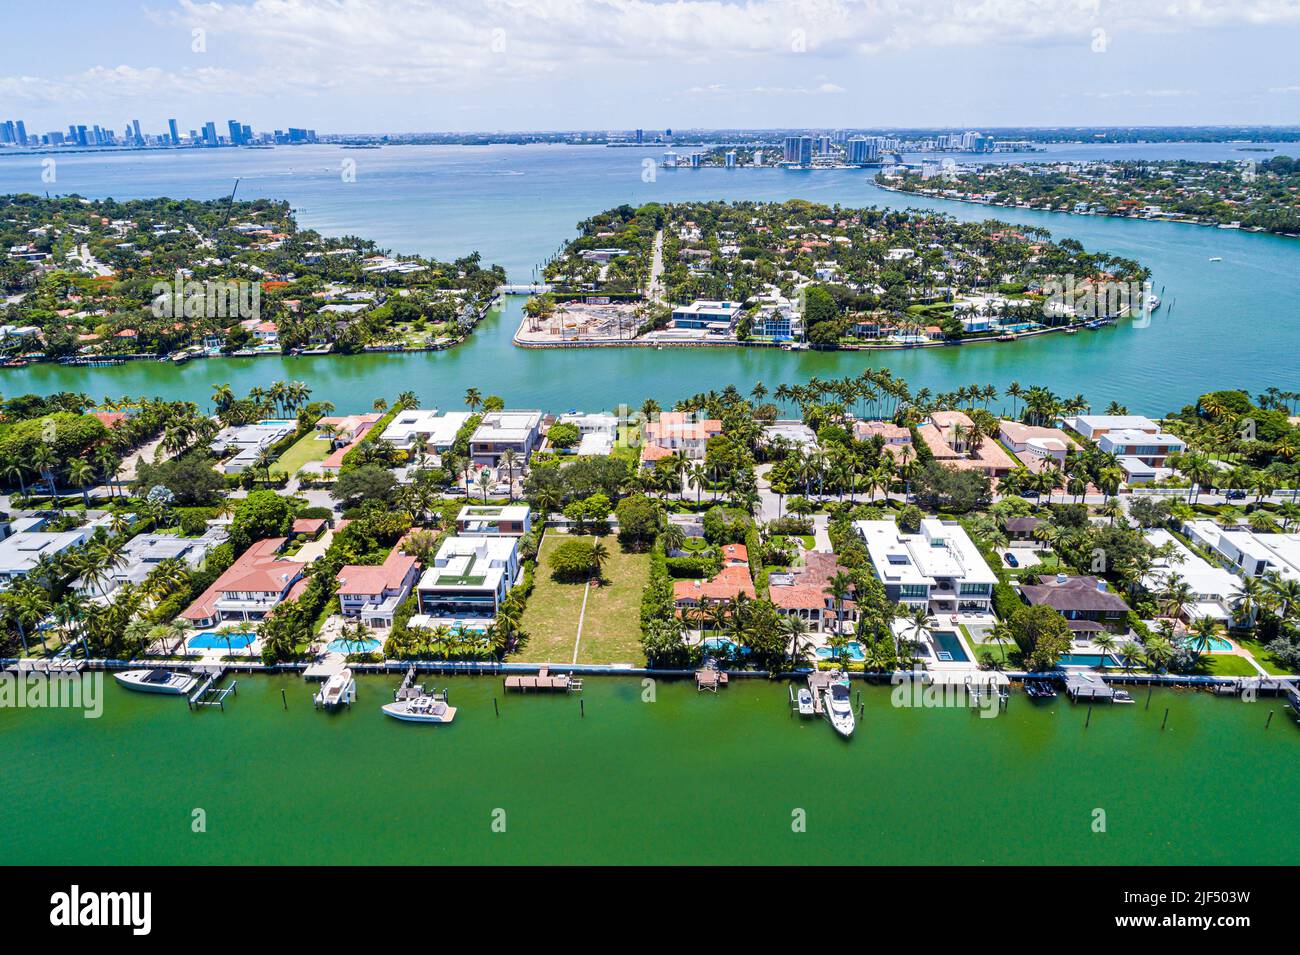 Miami Beach Florida, Luftaufnahme von oben, Indian Creek Biscayne Bay Allison Island La Gorce Island City Skyline, Villen Anwesen Häuser Haus Stockfoto